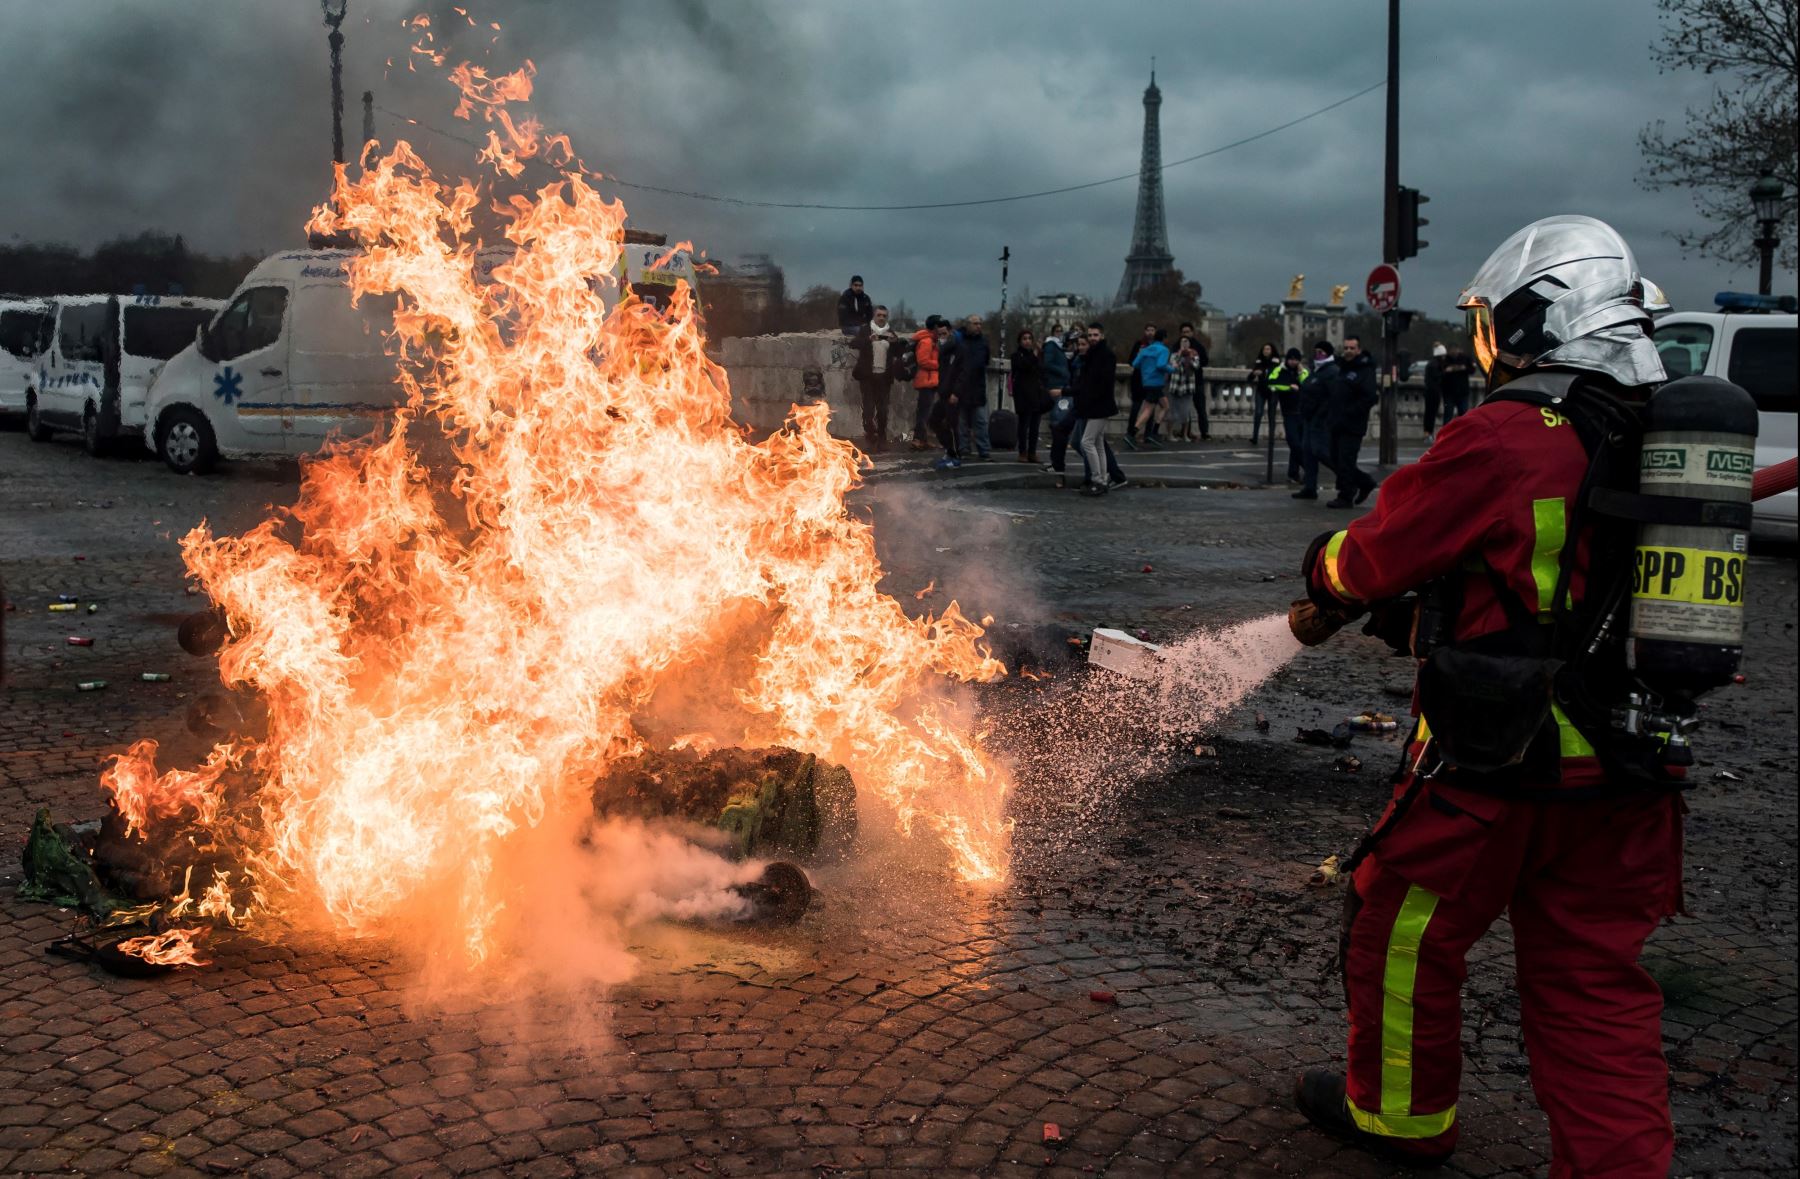 Bomberos apagan un fuego iniciado por conductores de ambulancias que participan en una protesta ante la Asamblea Nacional, en ParÌs, Francia. Los manifestantes bloquearon el tráfico junto a la Asamblea Nacional para exigir la suspensión de una reforma del sistema de financiación de los transportes sanitarios. EFE